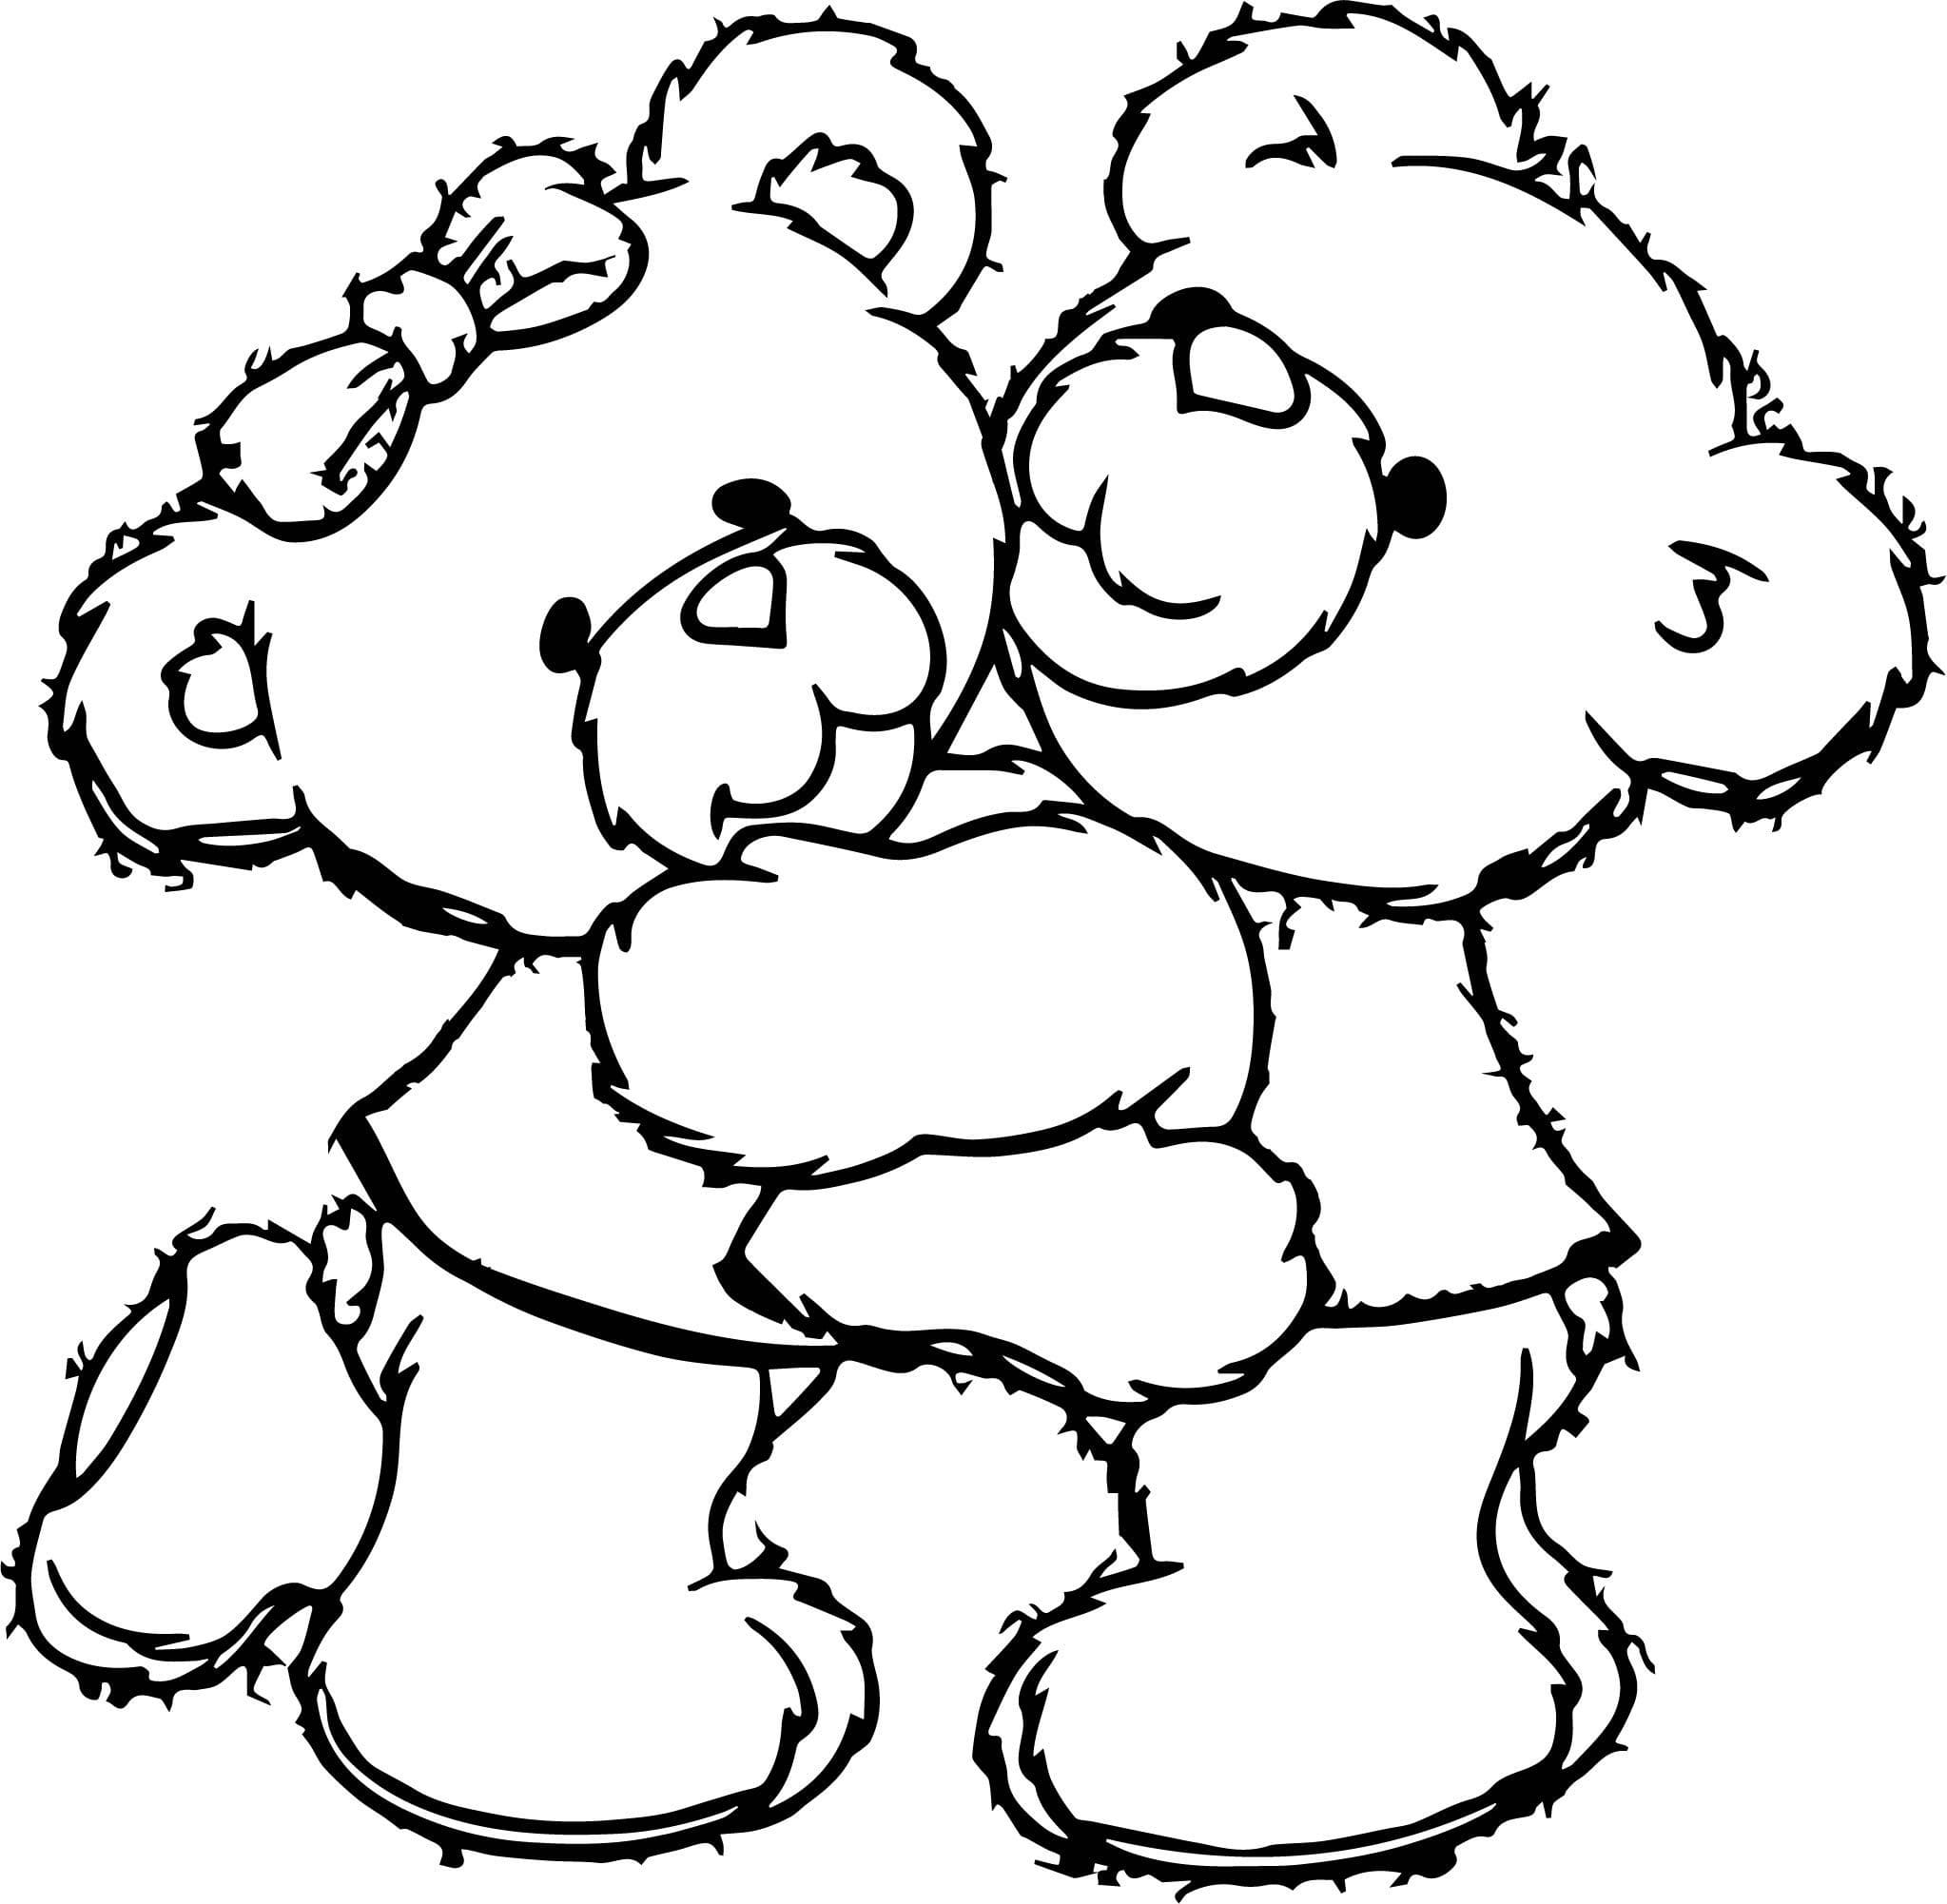 Coloring page Teddy Bears Teddy bears dancing